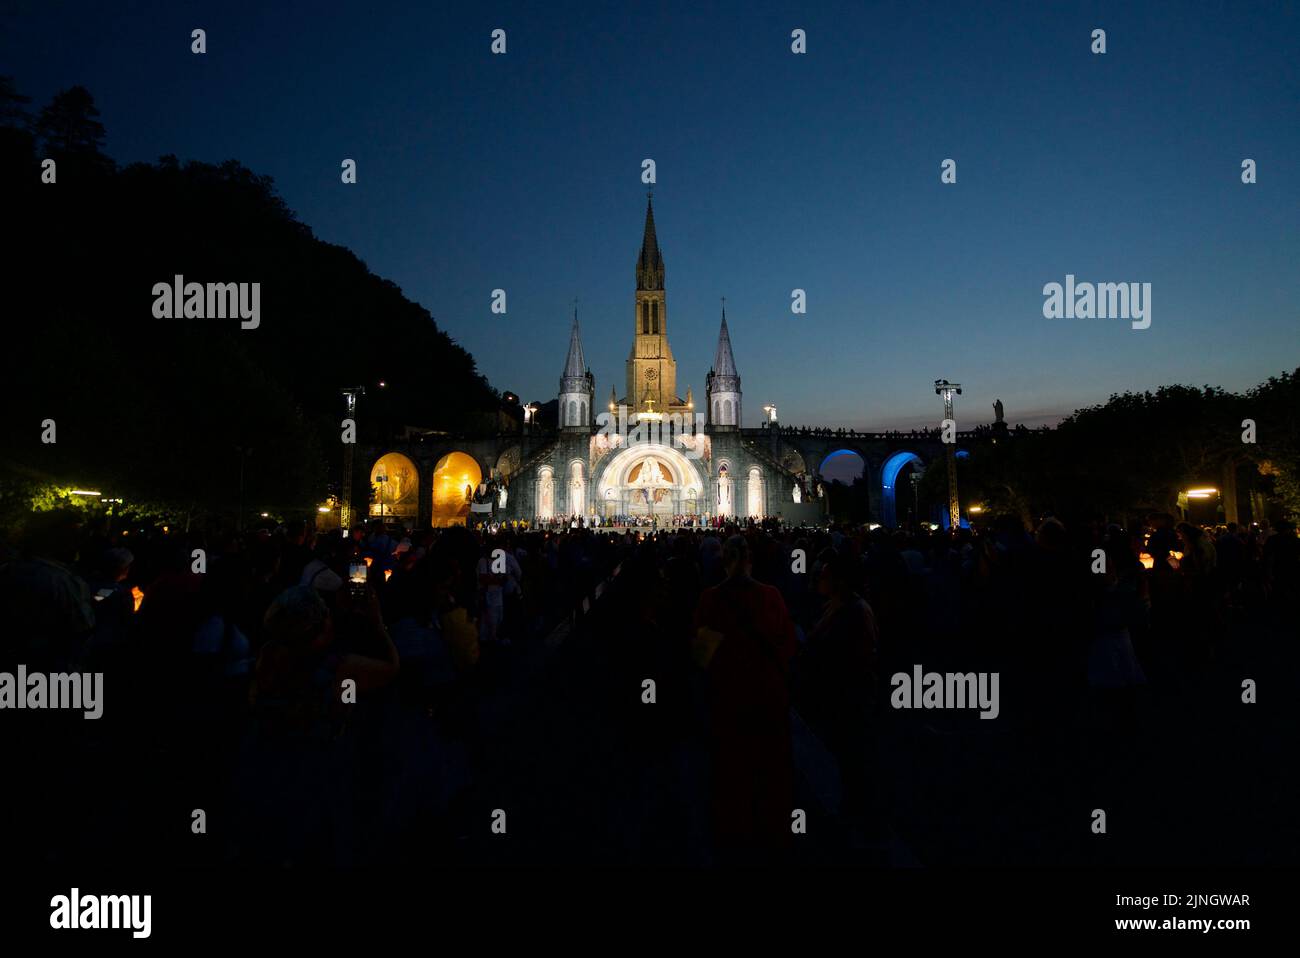 Menschen versammelten sich @ Sanctuaires Notre-Dame de Lourdes Eine katholische Pilgerfahrt. Nächtliche Kerzenschein-Messe-Wallfahrtskirche unserer Lieben Frau von Lourdes. Lourdes-Prozession. Stockfoto